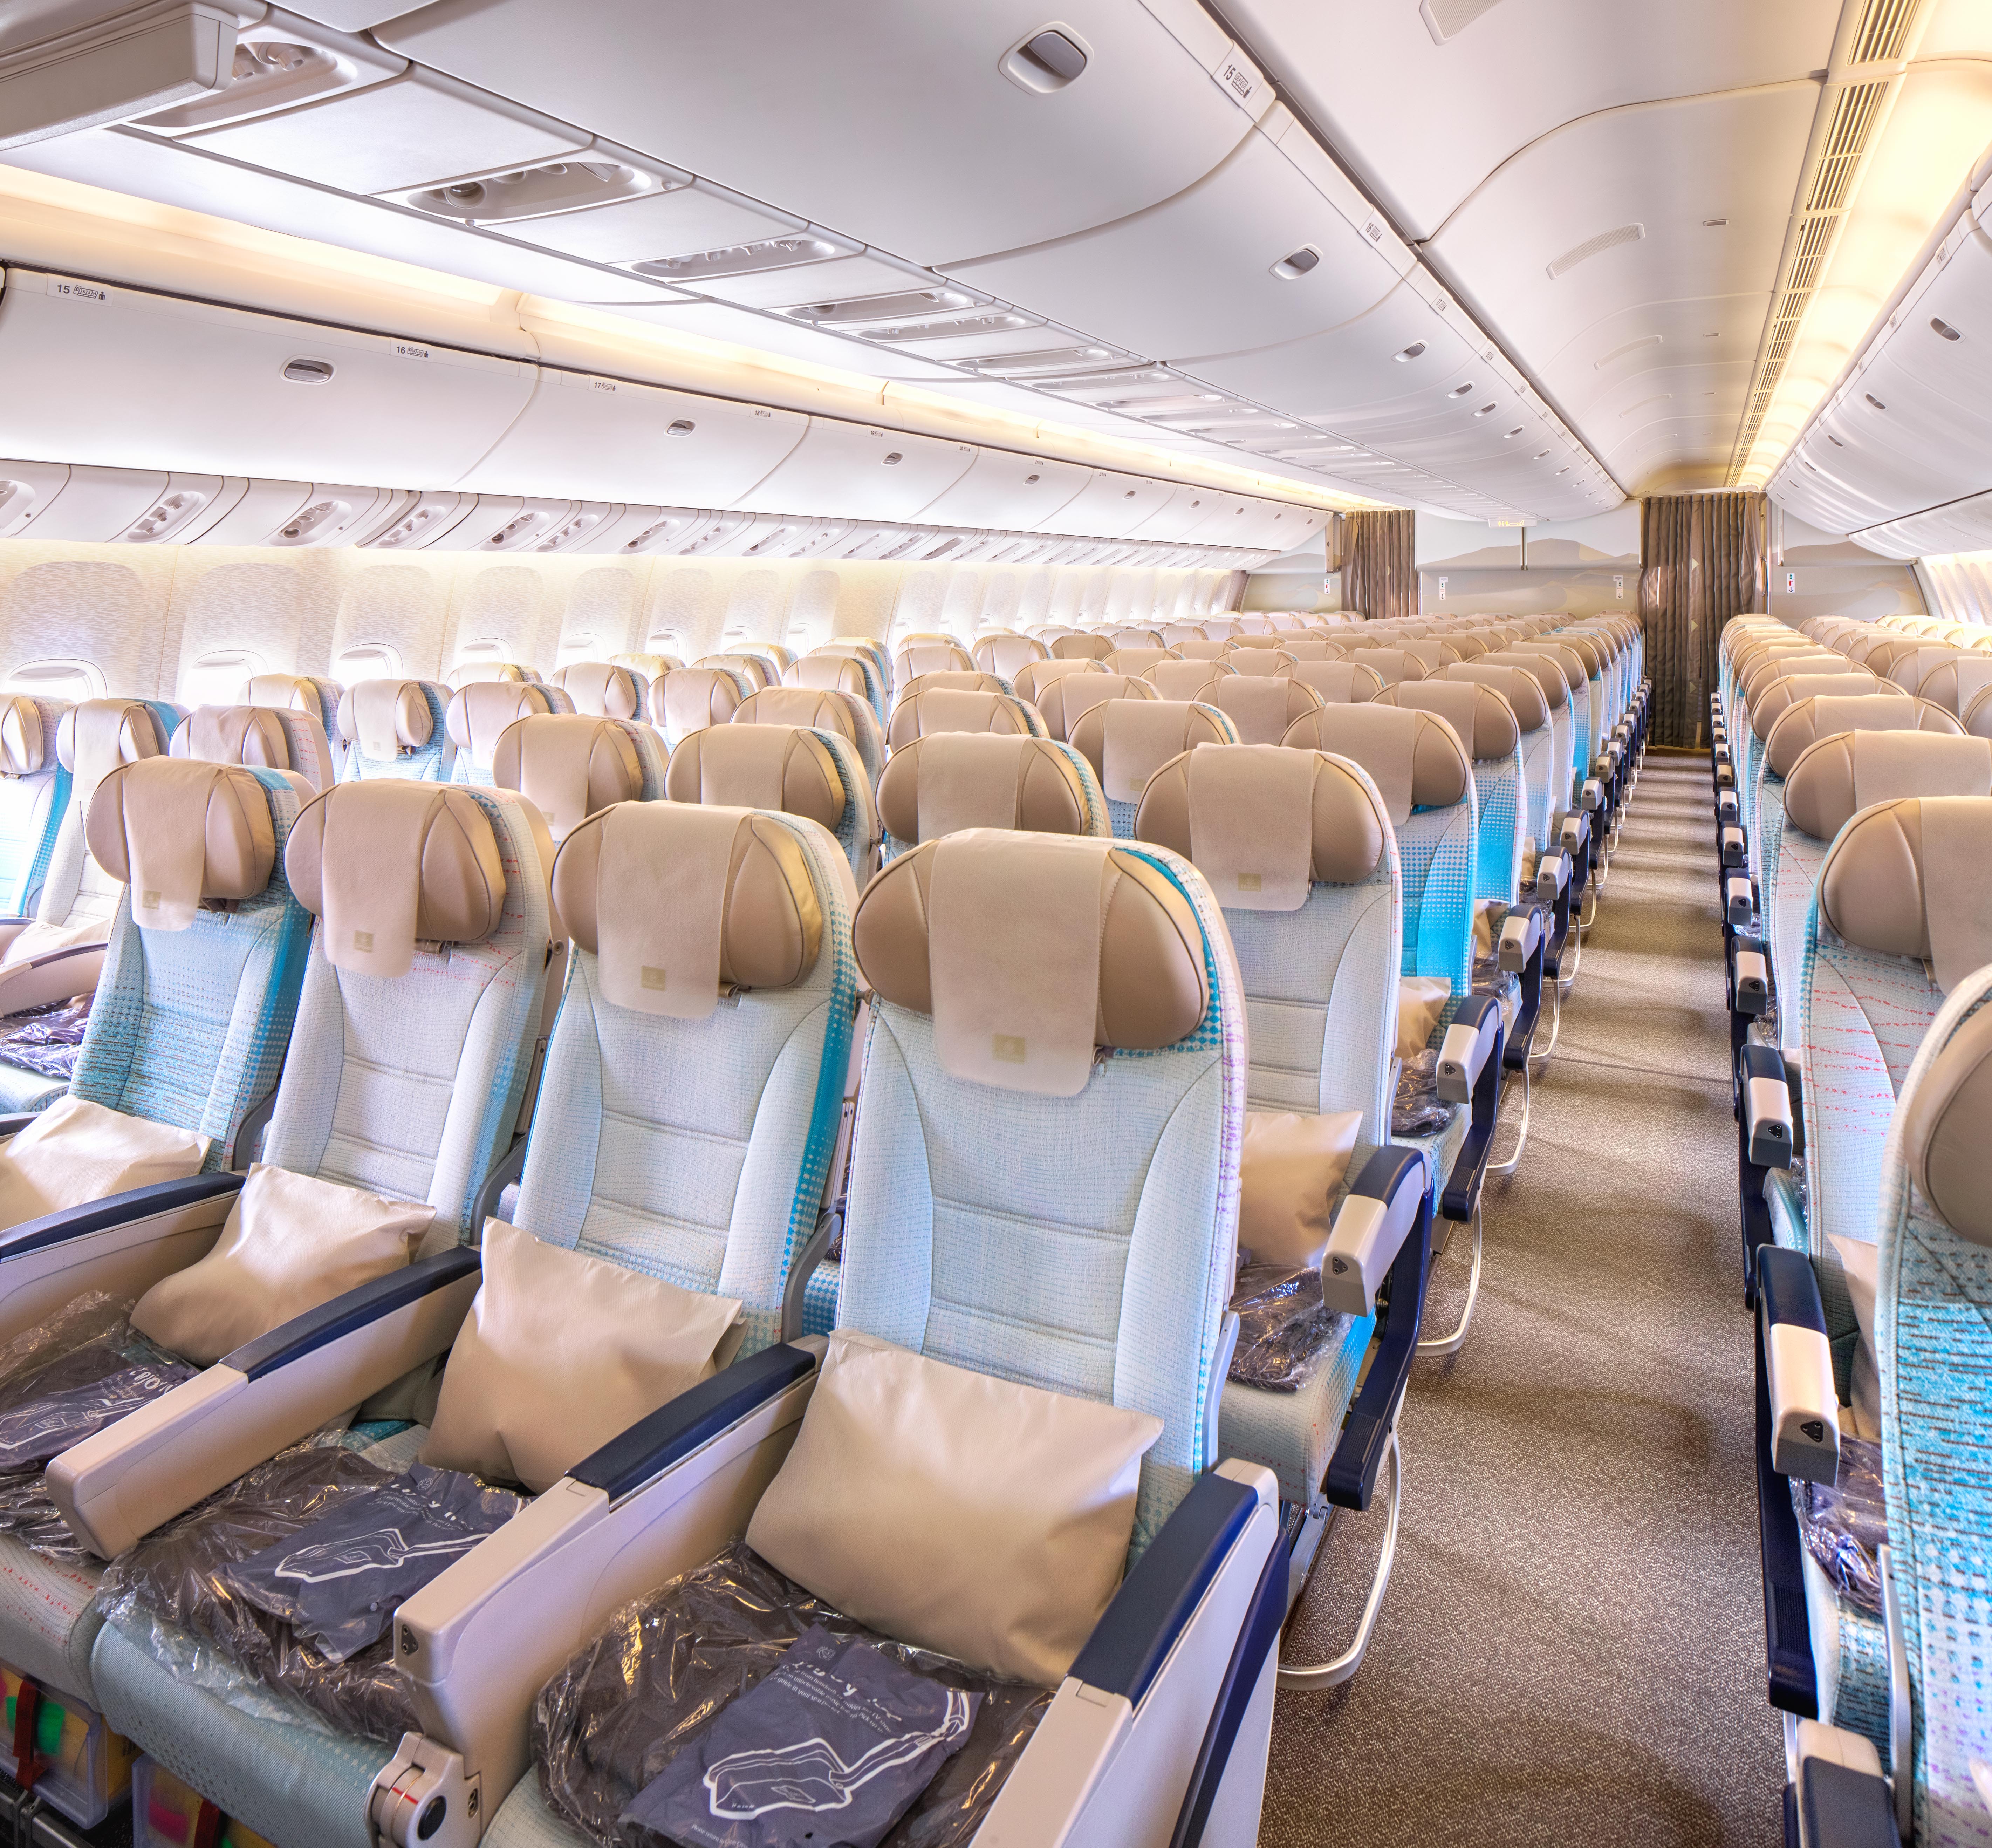 Emirates 777 200lr Economy Class Configuration Samchui Com